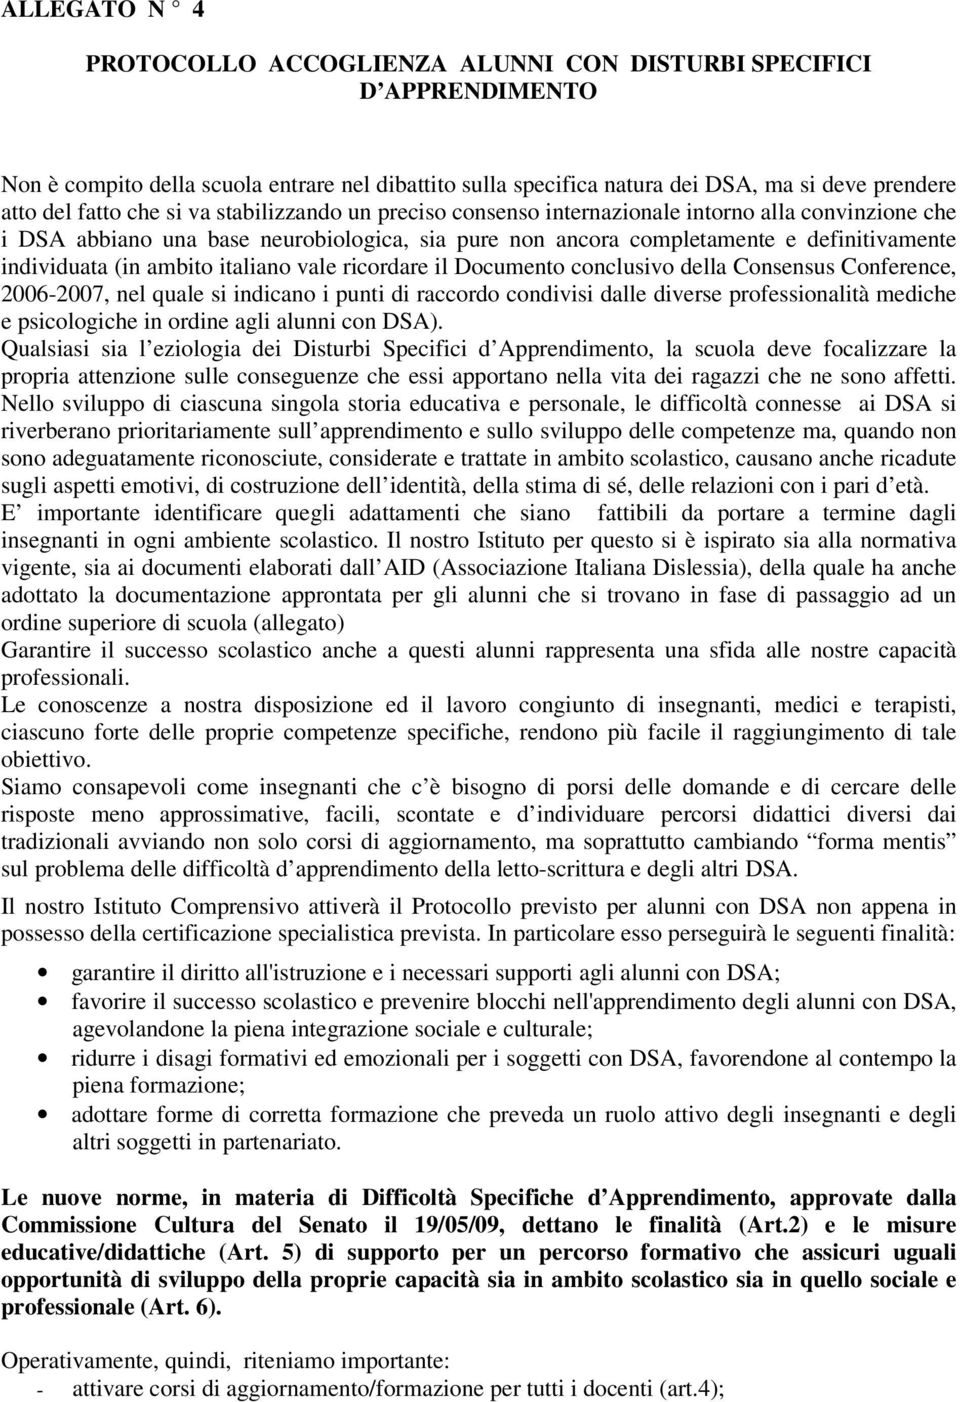 ambito italiano vale ricordare il Documento conclusivo della Consensus Conference, 2006-2007, nel quale si indicano i punti di raccordo condivisi dalle diverse professionalità mediche e psicologiche